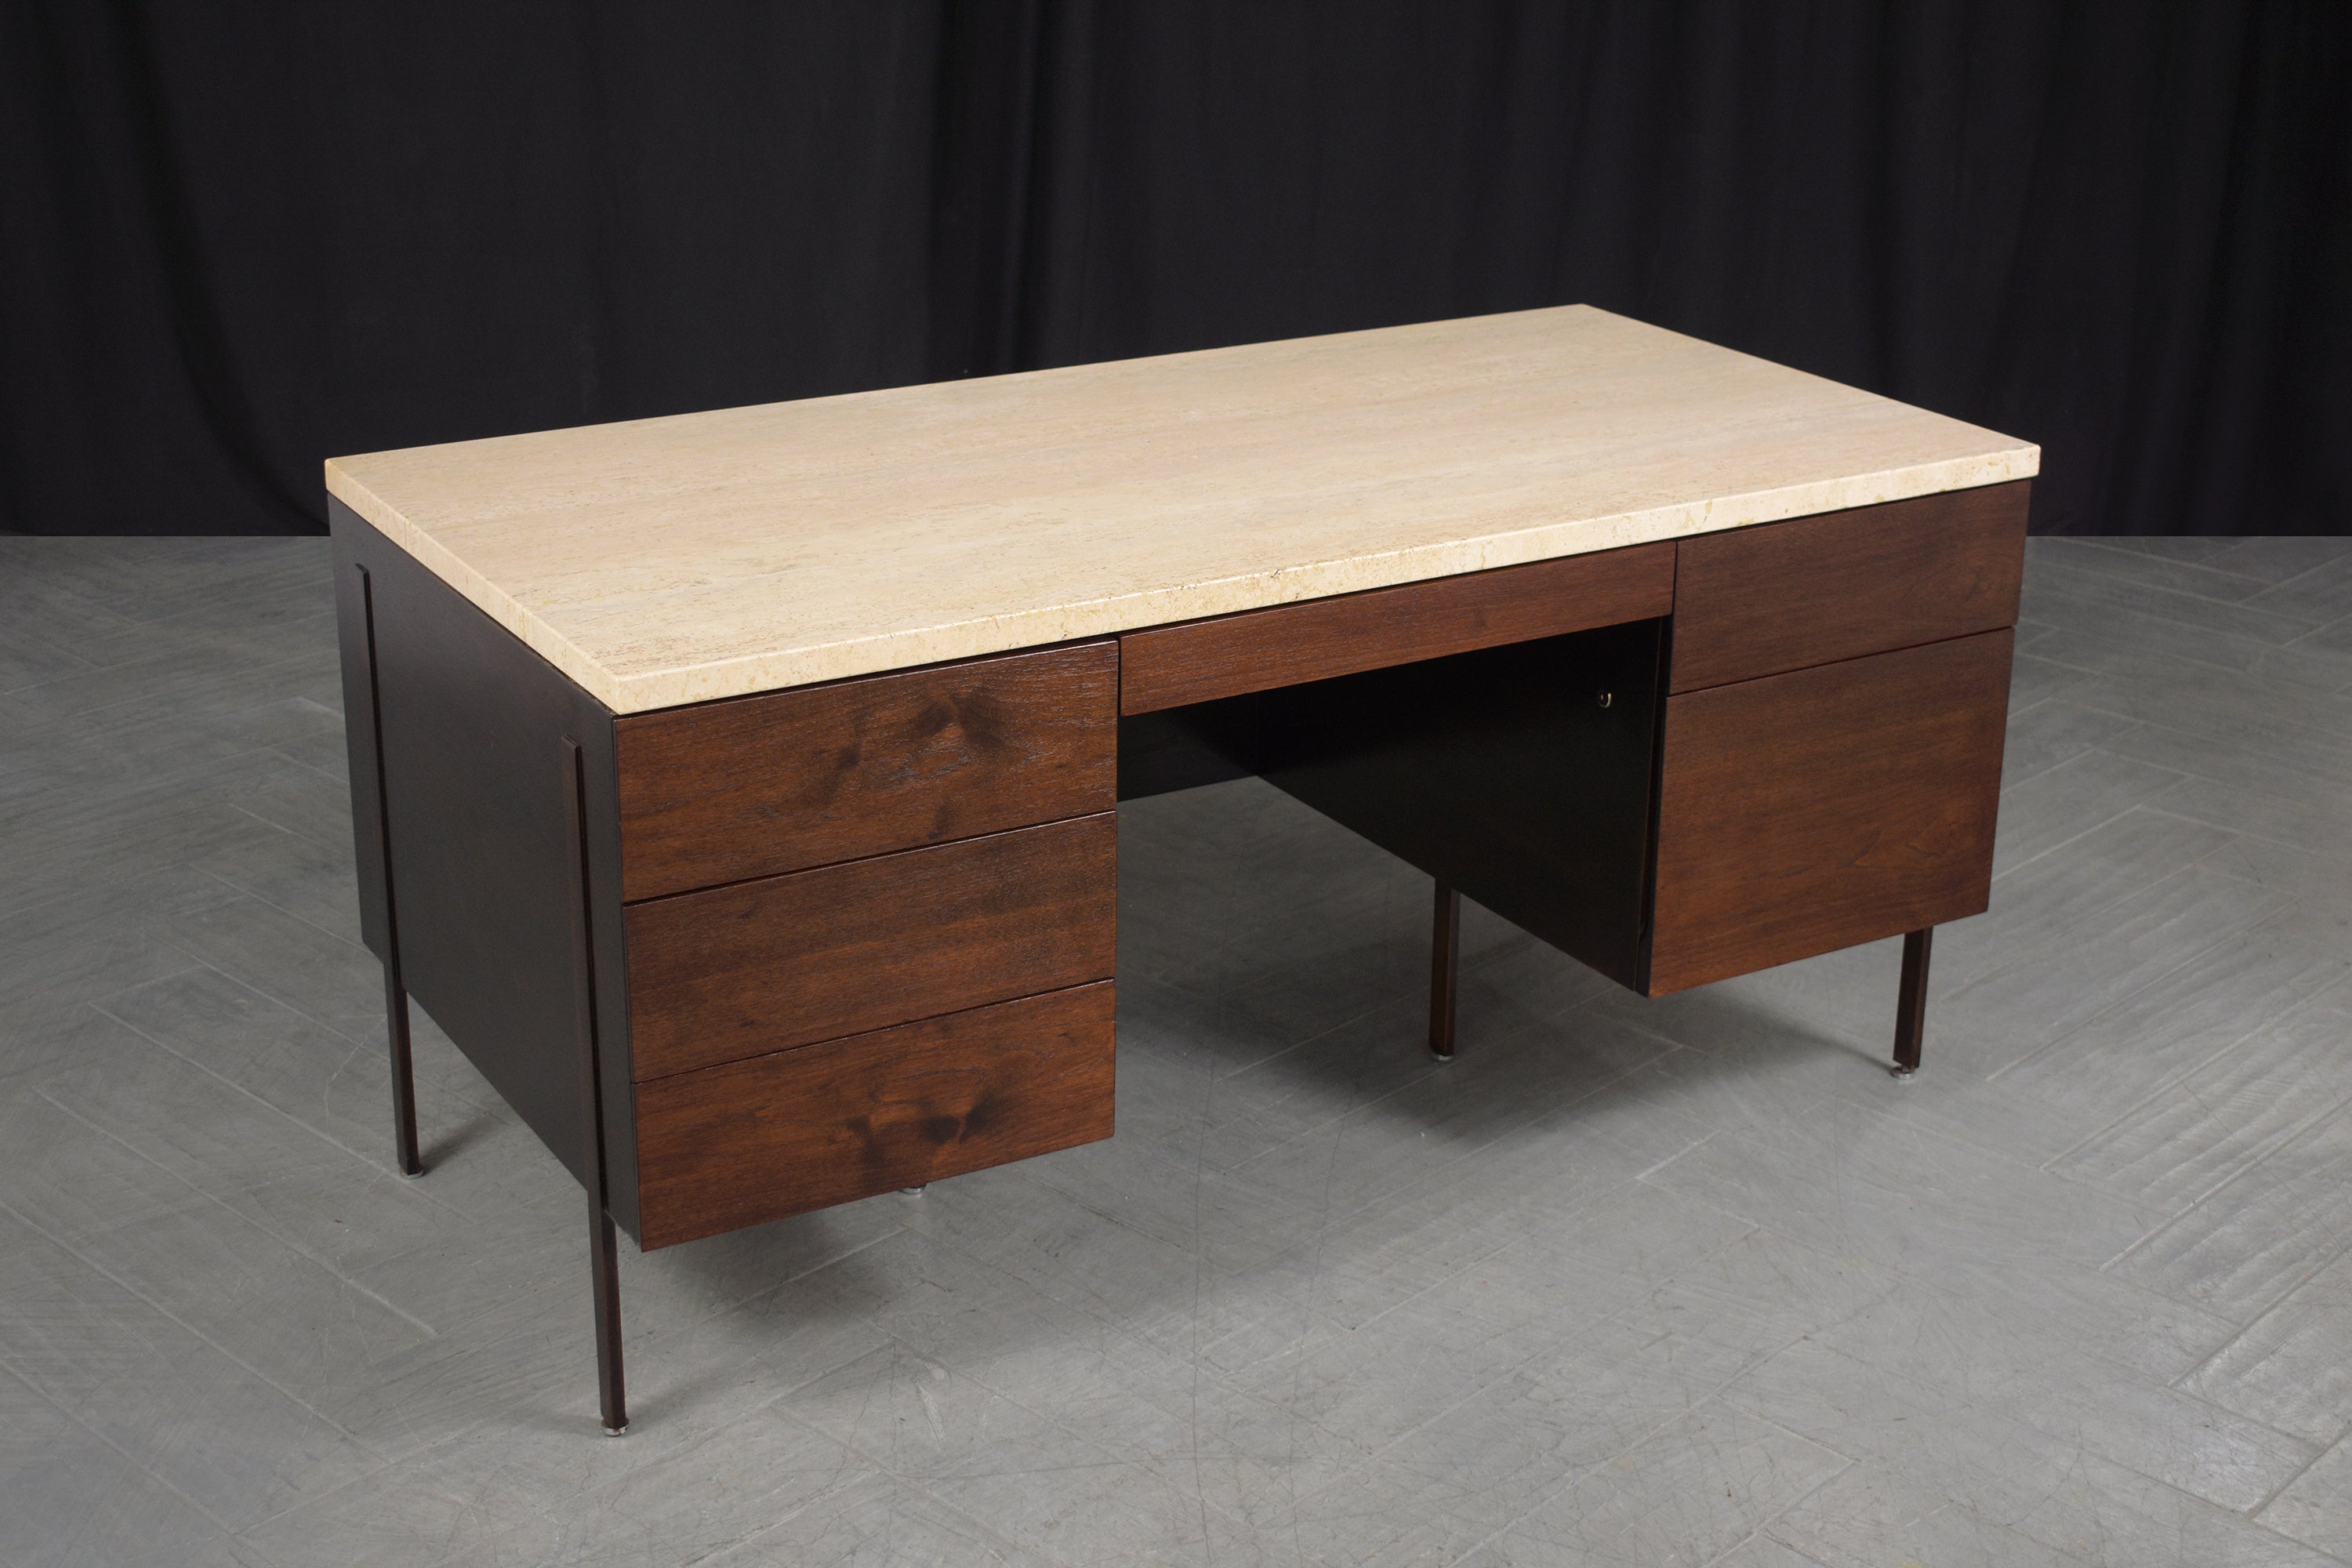 Erleben Sie die Raffinesse der 1960er Jahre mit unserem wunderschön restaurierten Harvey Probber Mid-Century Modern Executive Desk. Dieser aus feinstem Mahagoni gefertigte Schreibtisch ist ein Beispiel für das Design-Ethos der Epoche und die